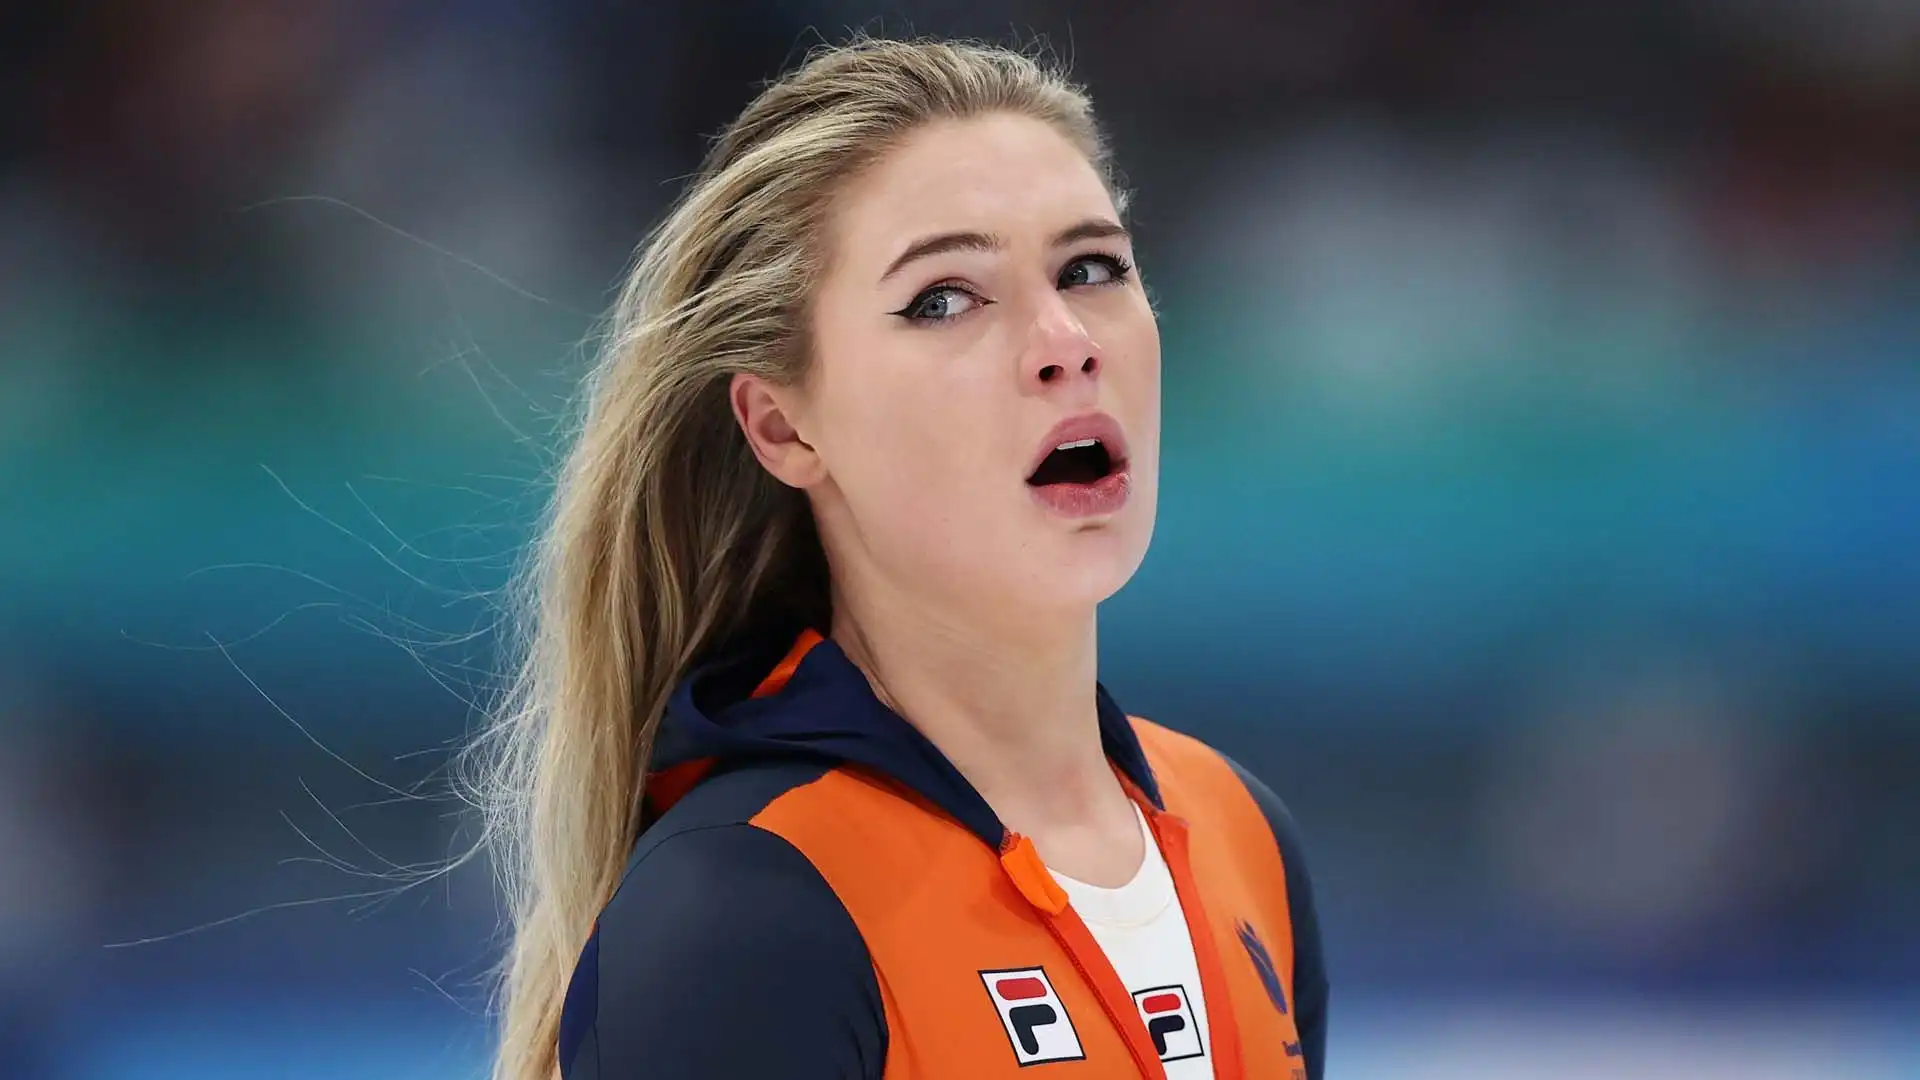 La pattinatrice di velocità su ghiaccio ha vinto la medaglia di bronzo ai Mondiali